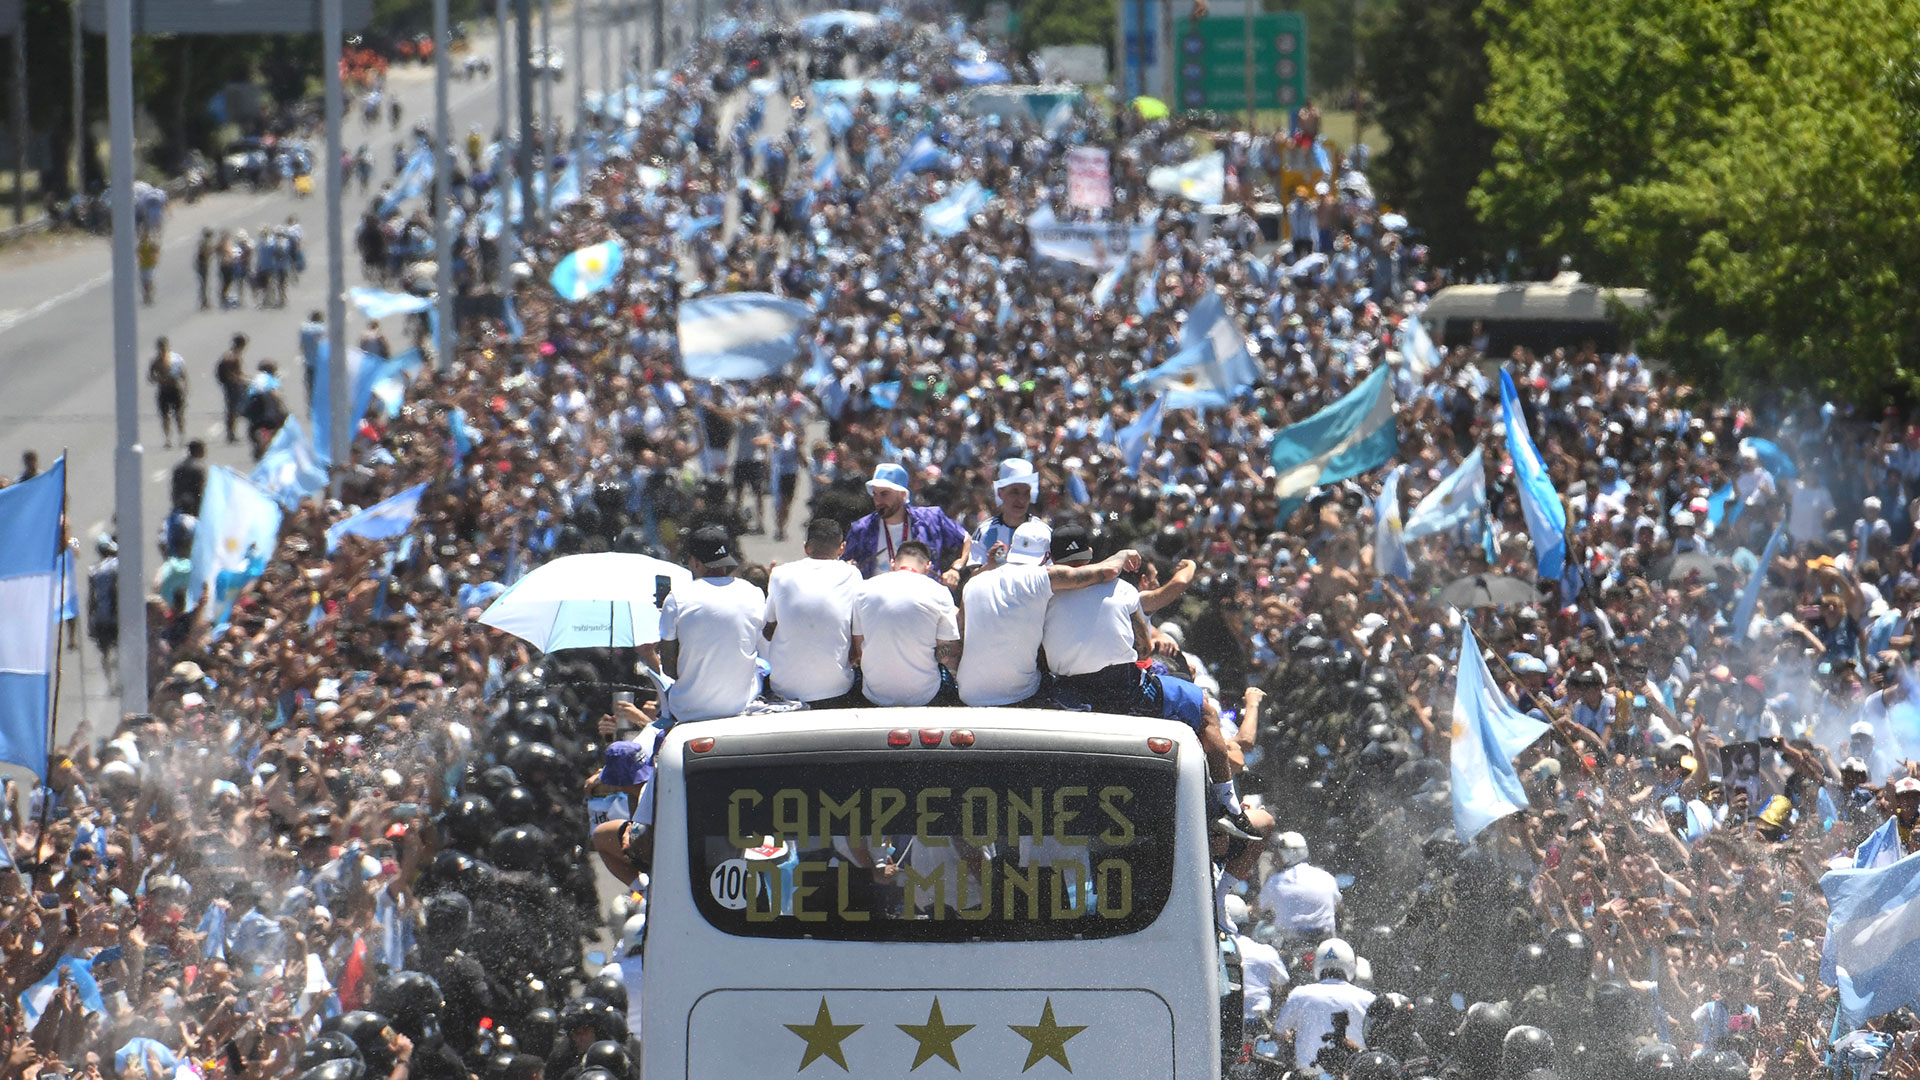 Tras el histórico recibimiento, el público argentino podrá ver a sus ídolos de la Selección en un partido de fútbol (Télam)